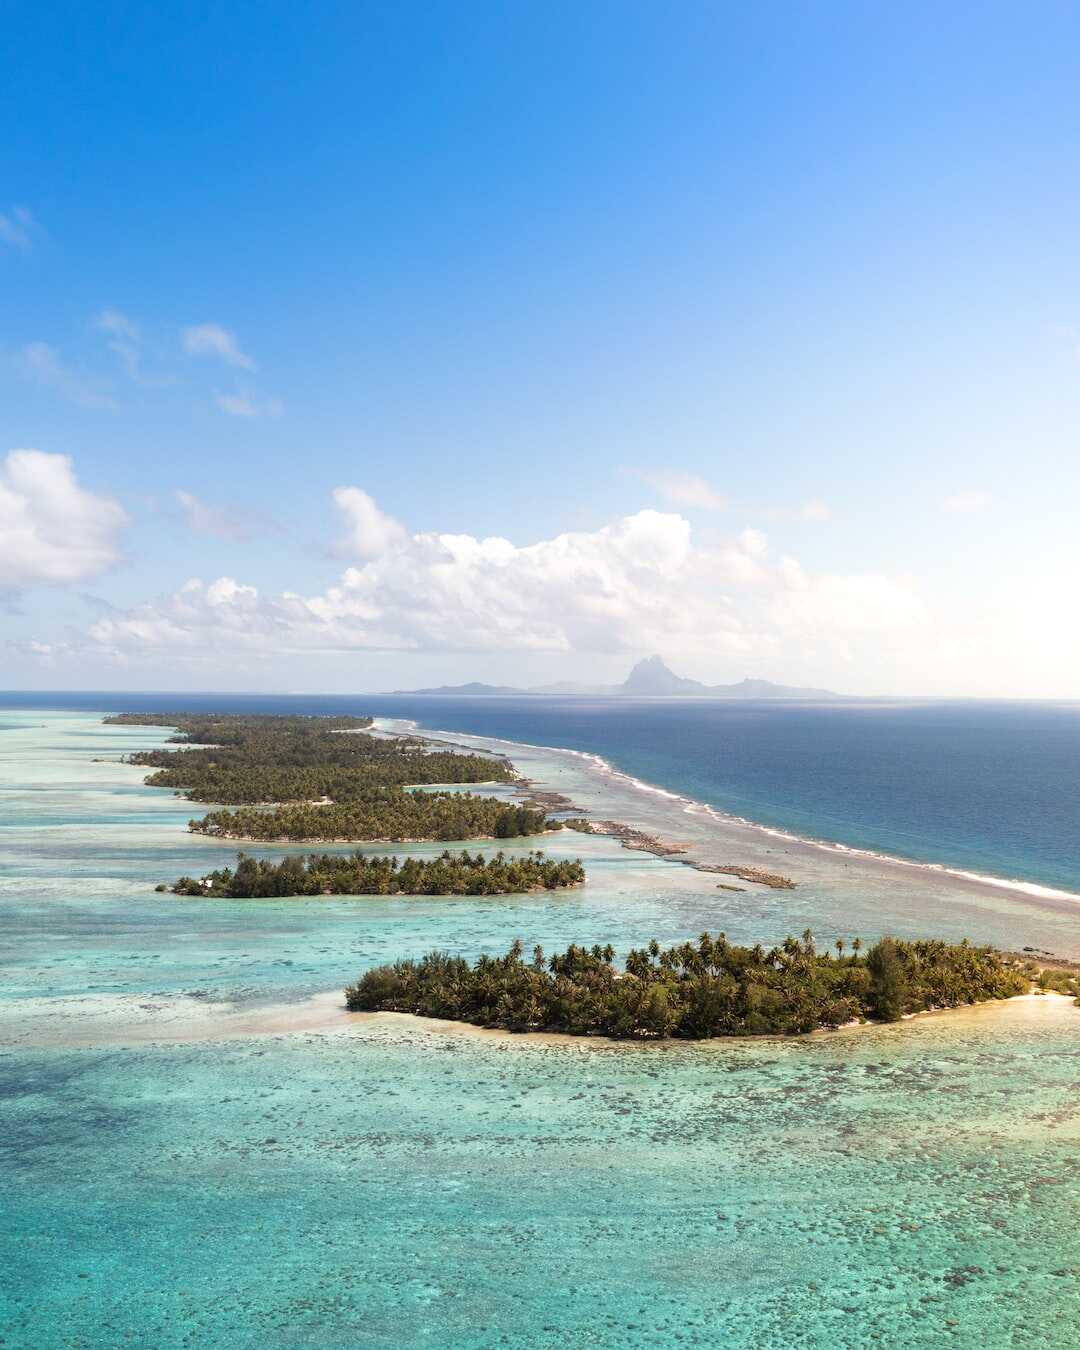 Découvrez les meilleures destinations de vacances en Polynésie française !